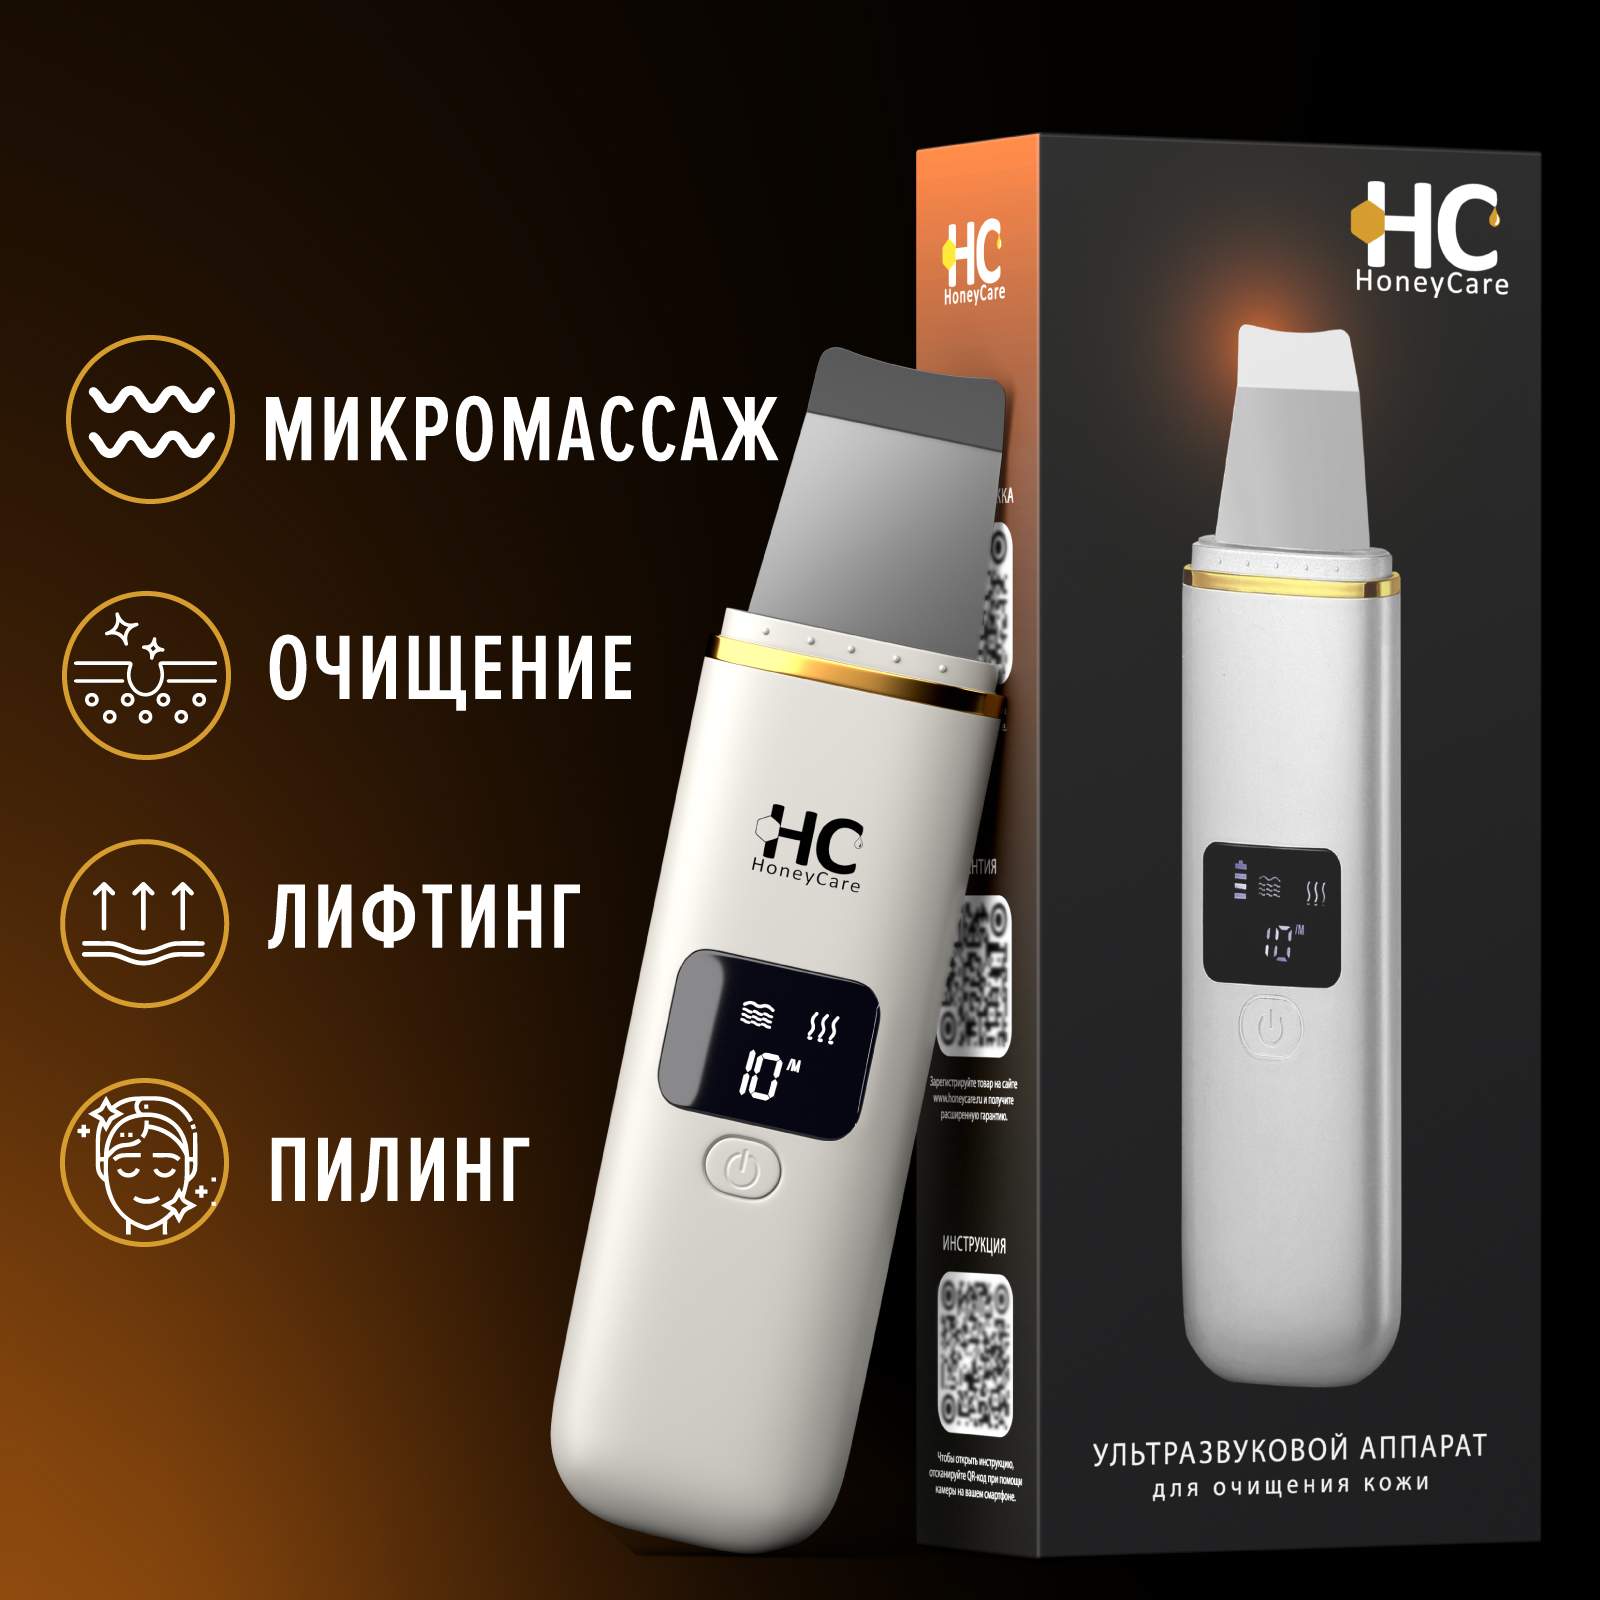 Купить ультразвуковой аппарат HoneyCare скрабер для чистки лица, цены на Мегамаркет | Артикул: 600013085281